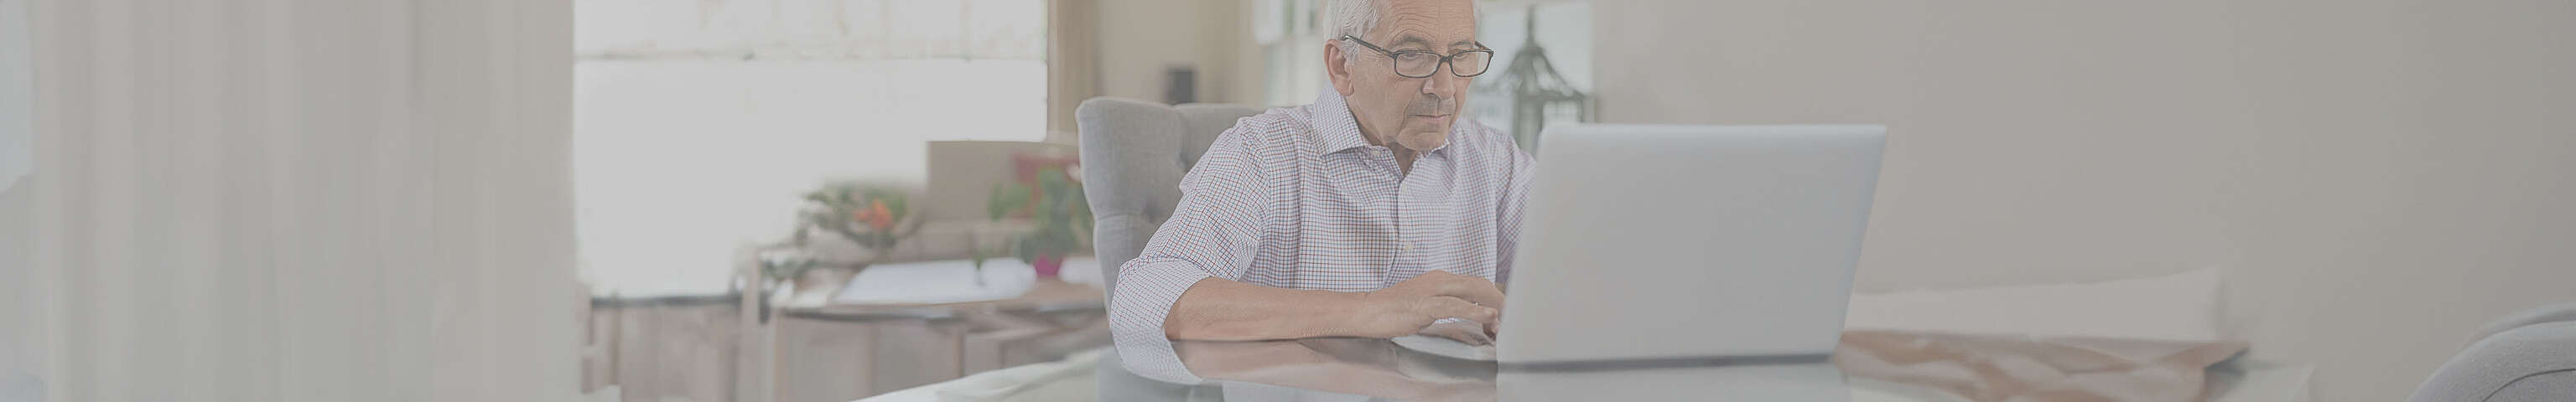 Älterer Mann sitzt vor einem Laptop